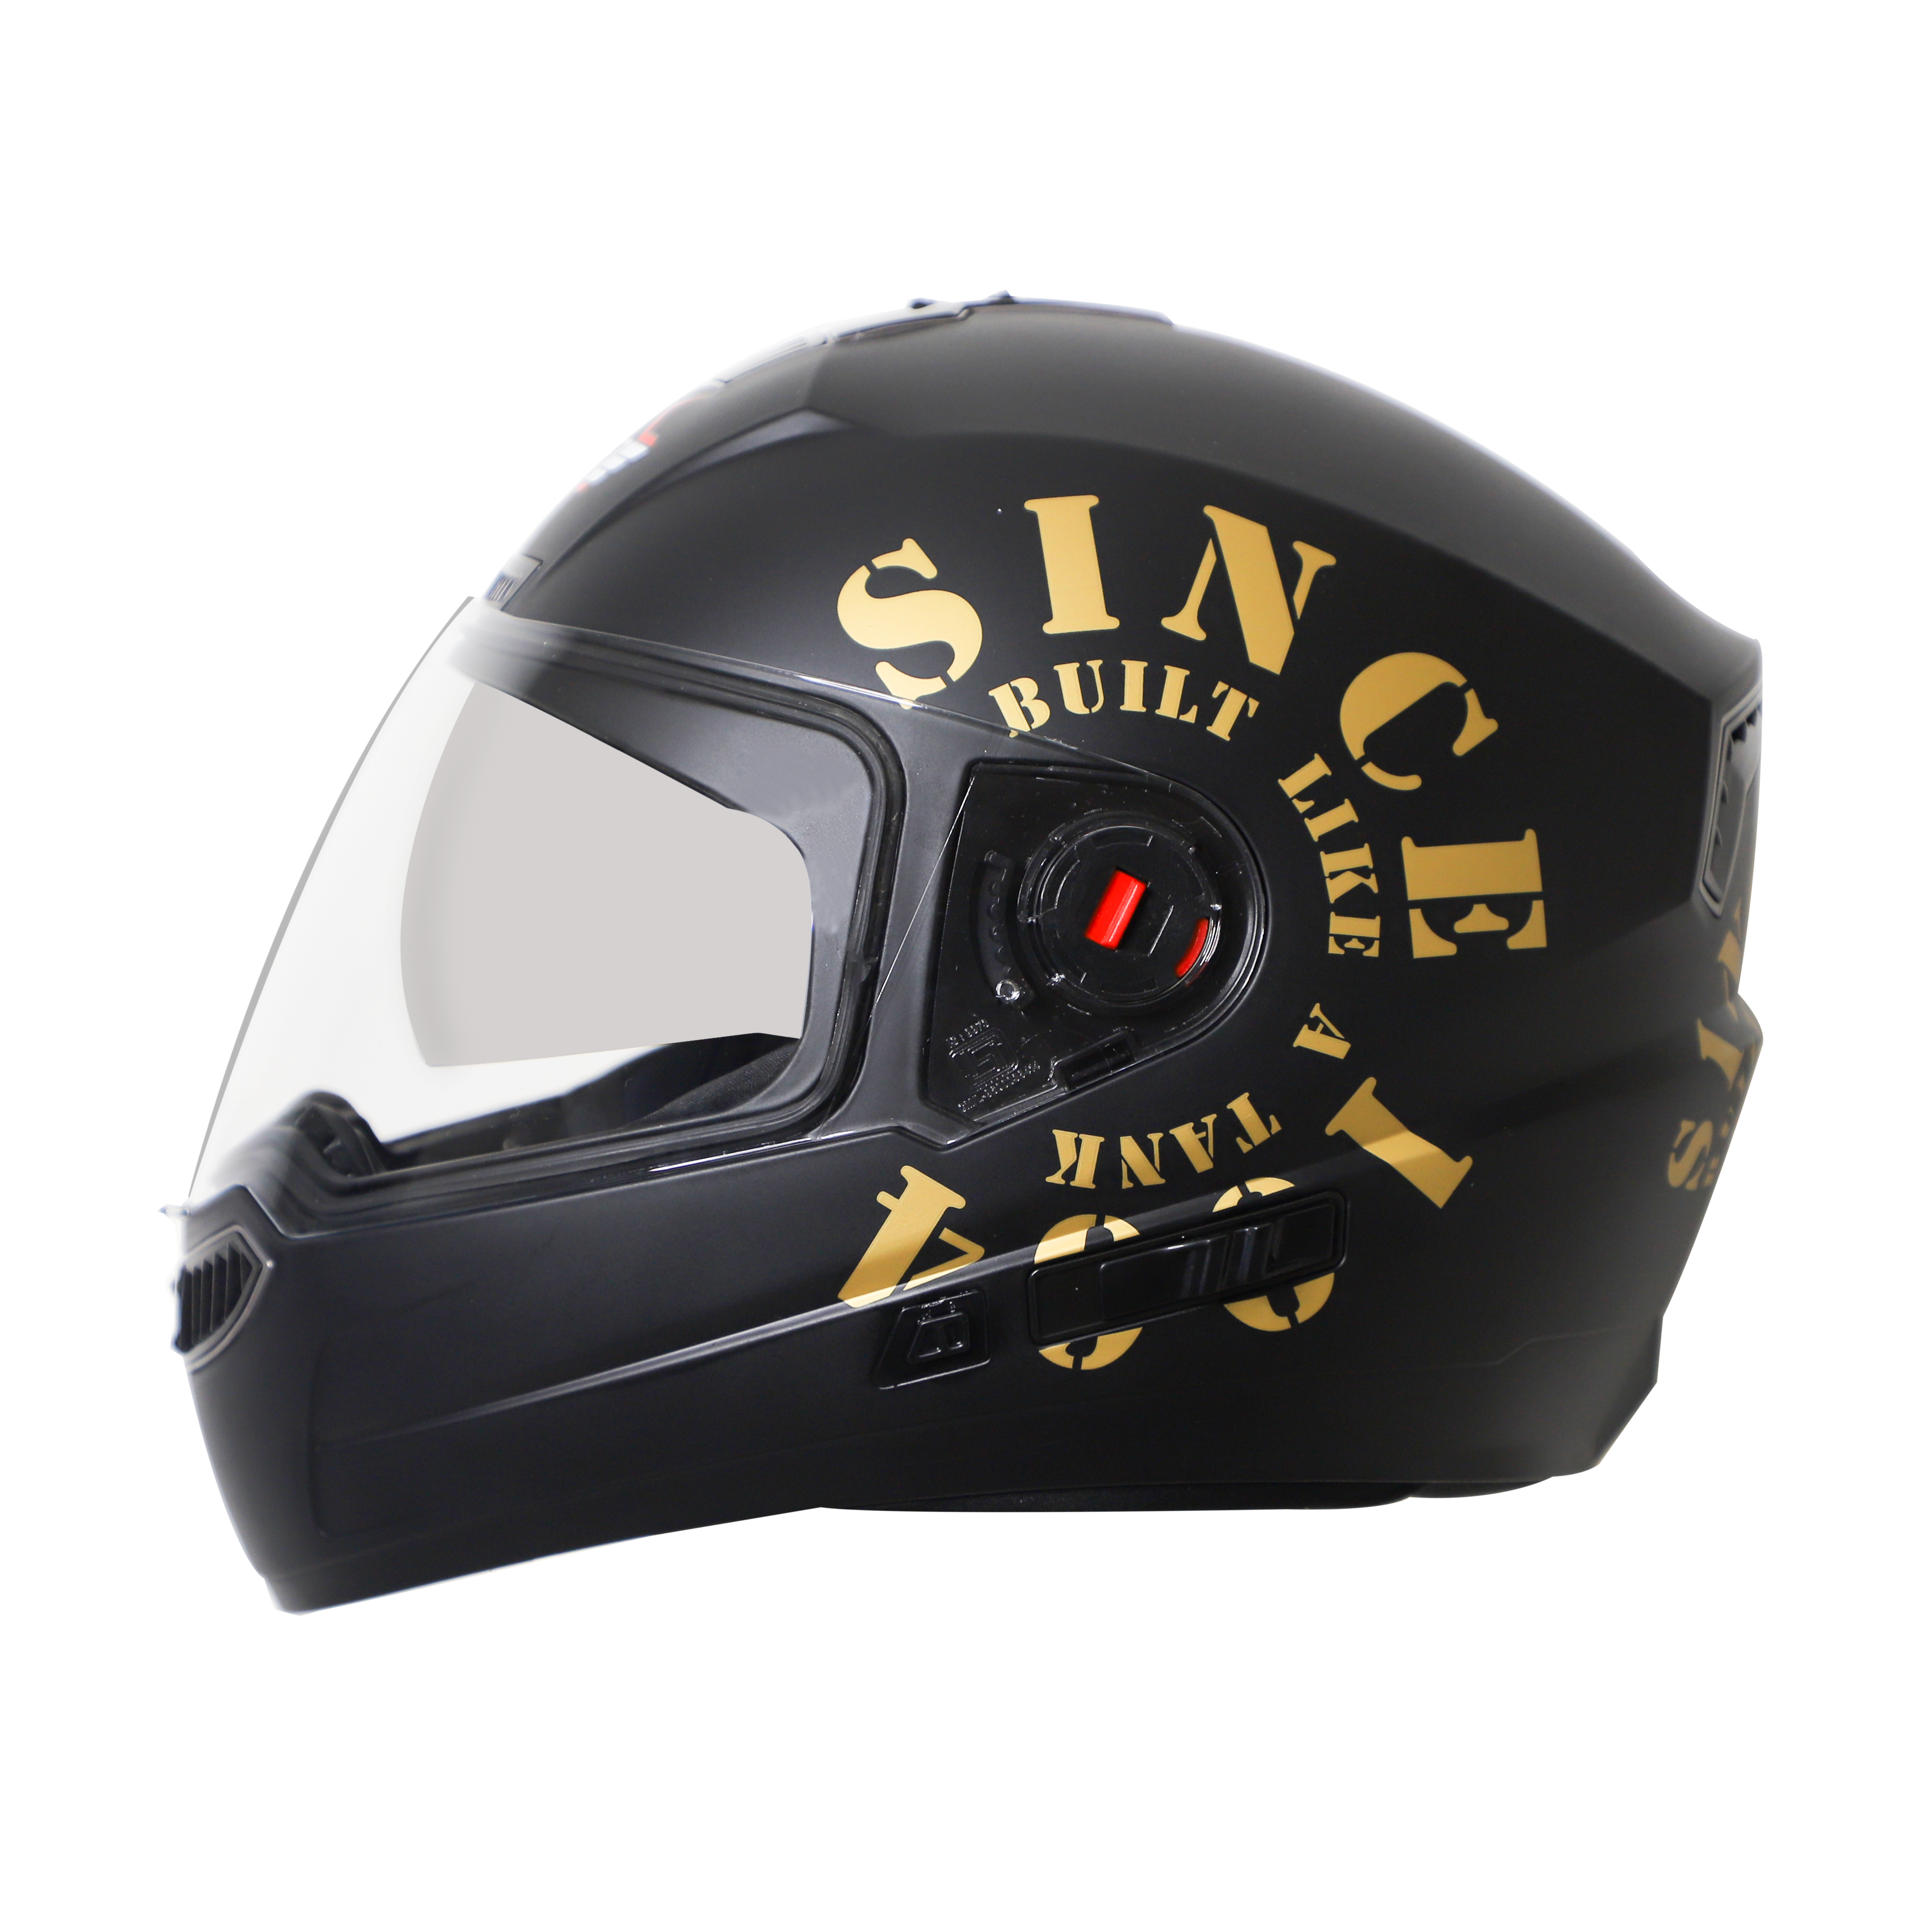 Steelbird SBA-1 Tank Double Visor Full Face Graphics Helmet, Inner Silver Sun Shield And Outer Clear Visor (Matt Black Gold)